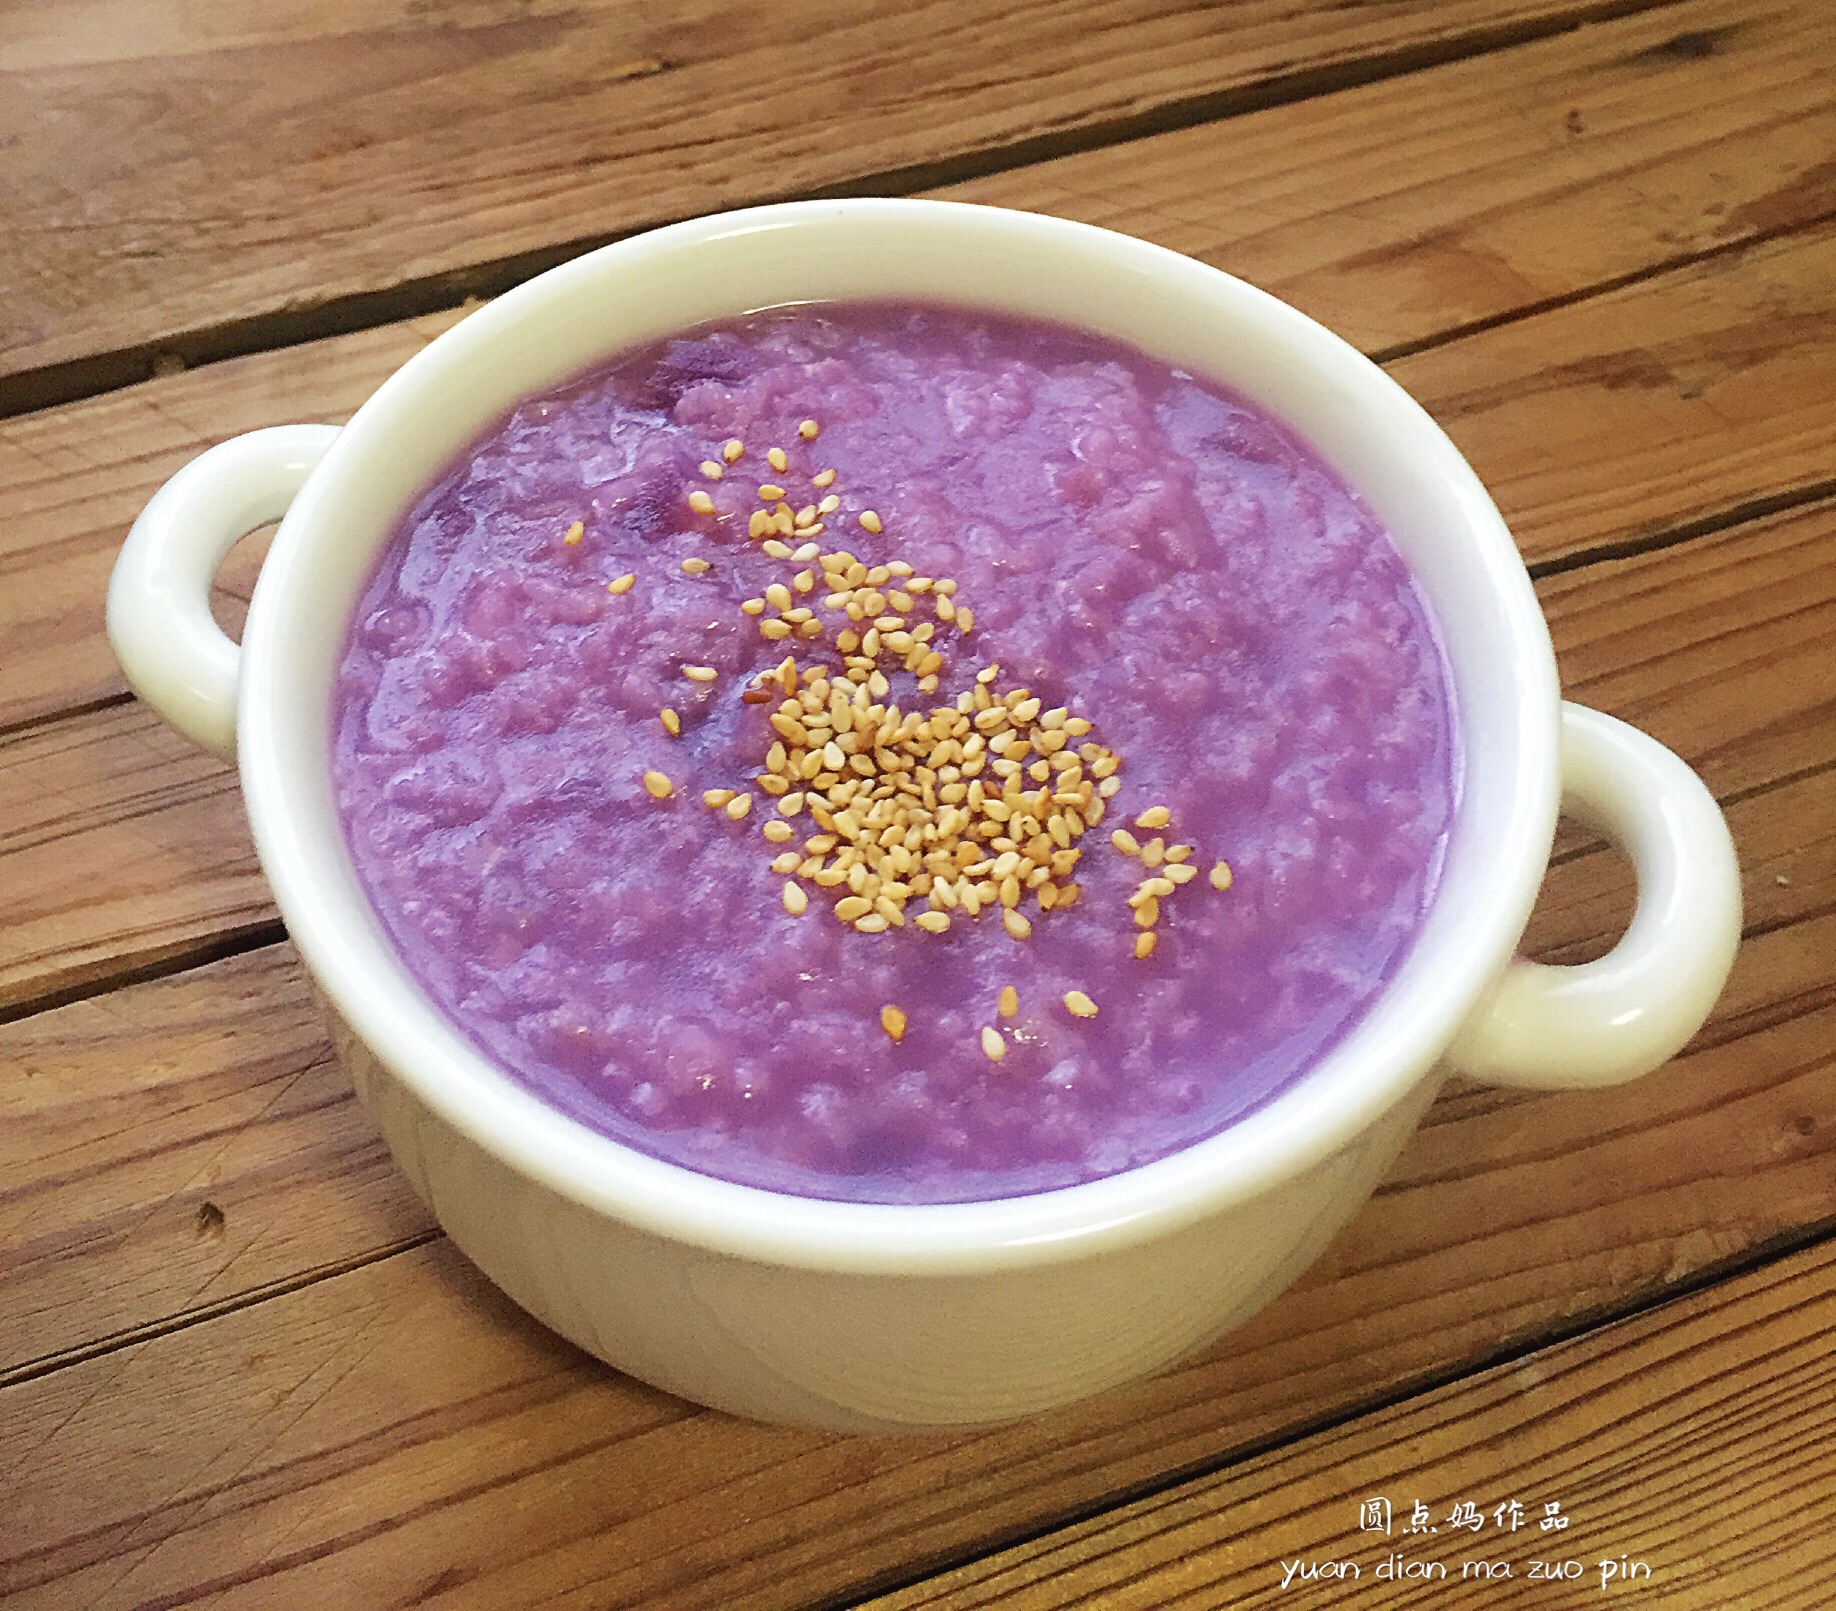 美味紫薯粥圖片素材-JPG圖片尺寸5616 × 3744px-高清圖案500960297-zh.lovepik.com